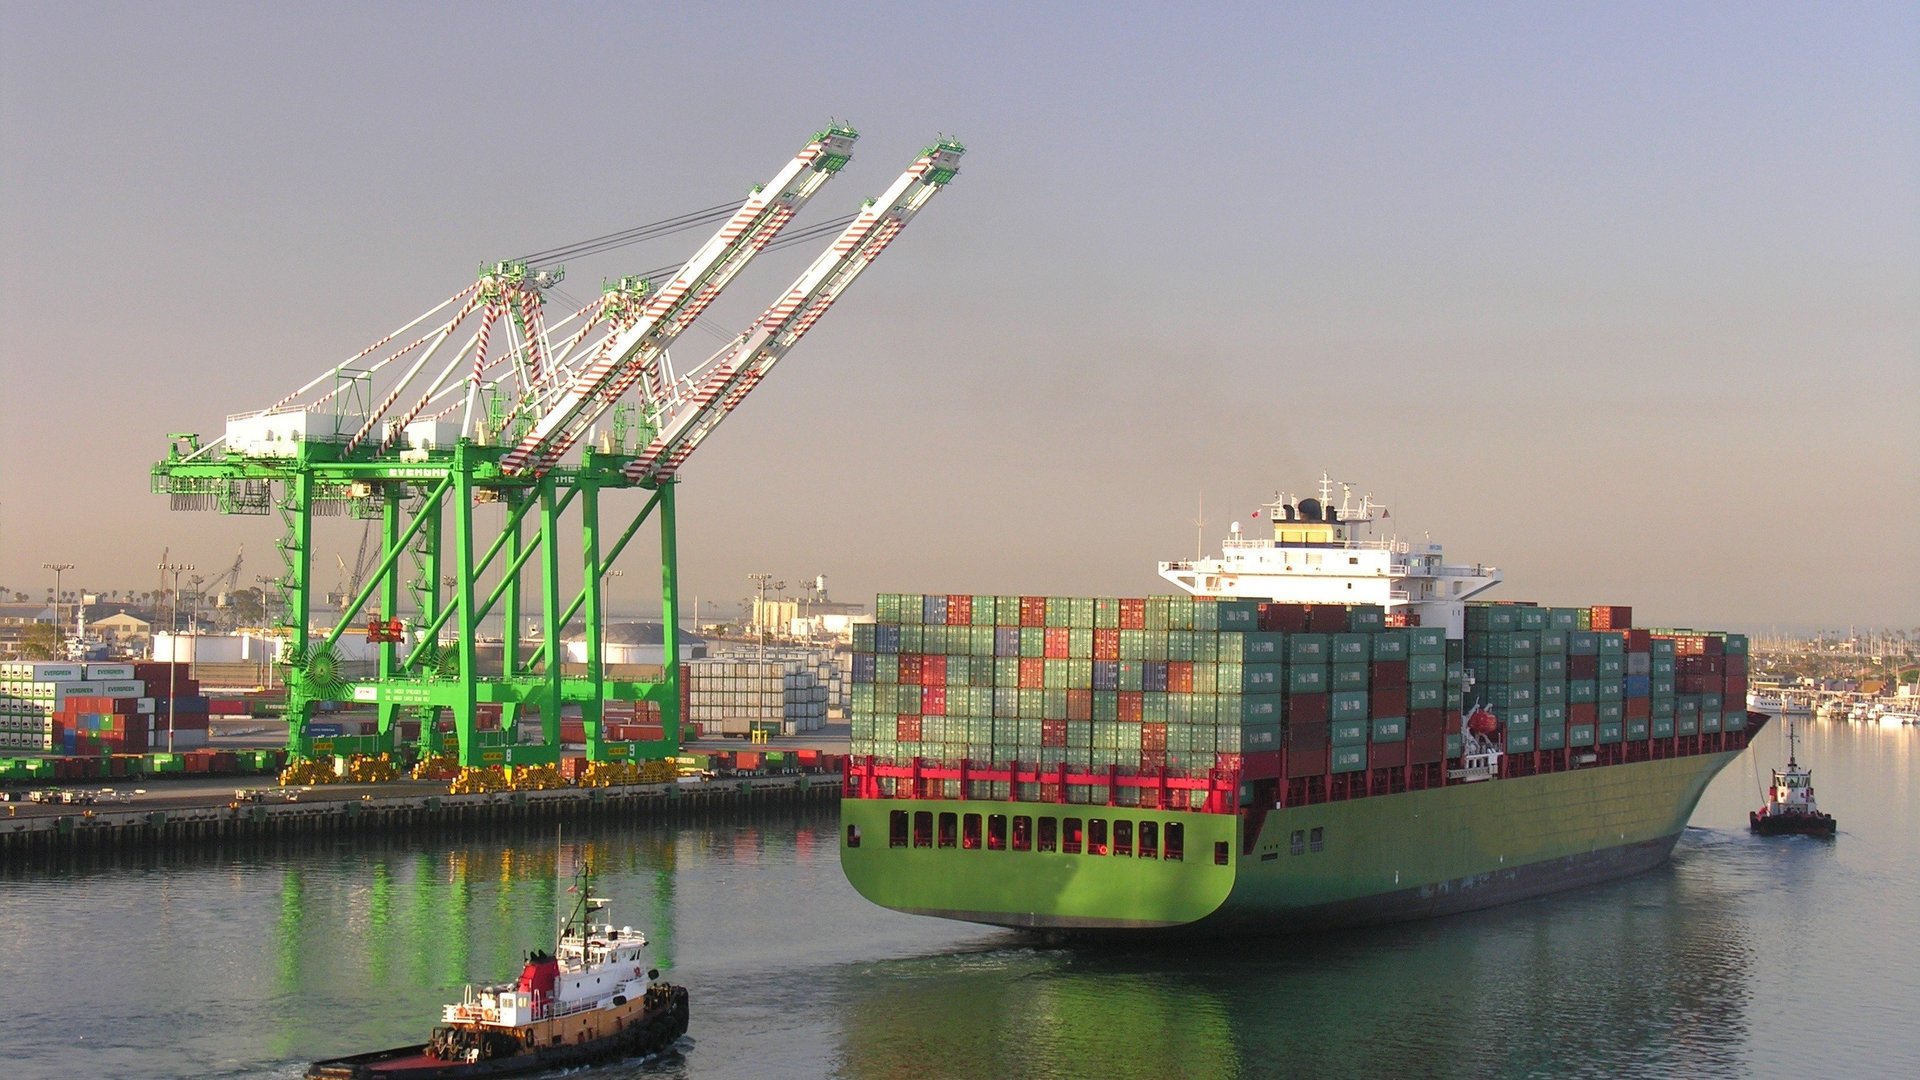 Einfahrt eines Containerschiffs in einen Hafen. Im Hintergrund stehen Kräne